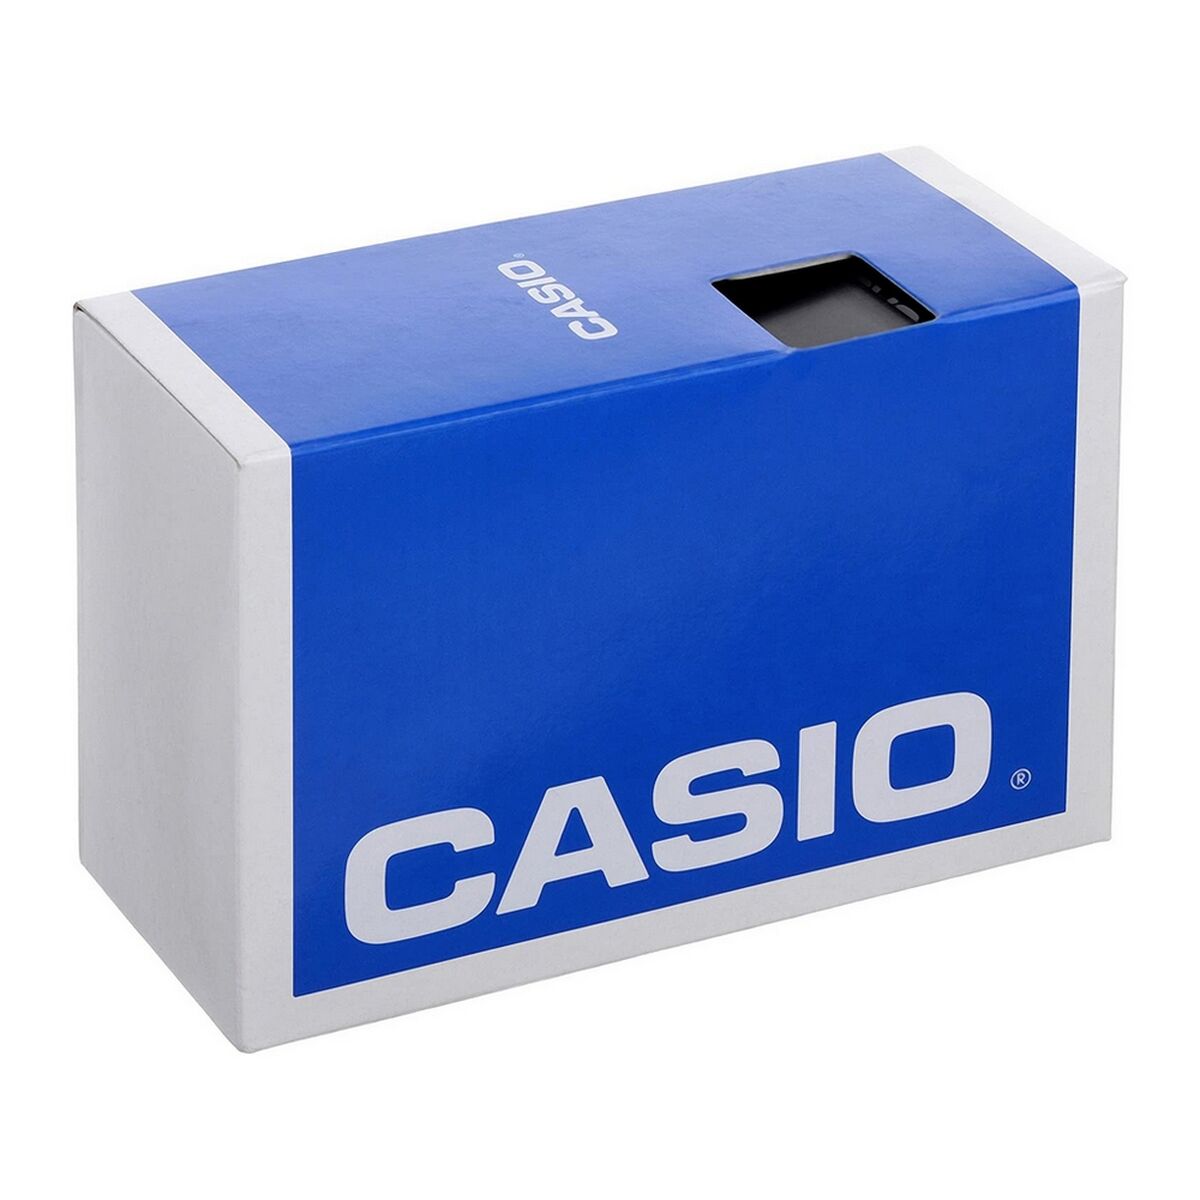 Kaufe Herrenuhr Casio AMW110-1AV (Ø 45 mm) bei AWK Flagship um € 131.00